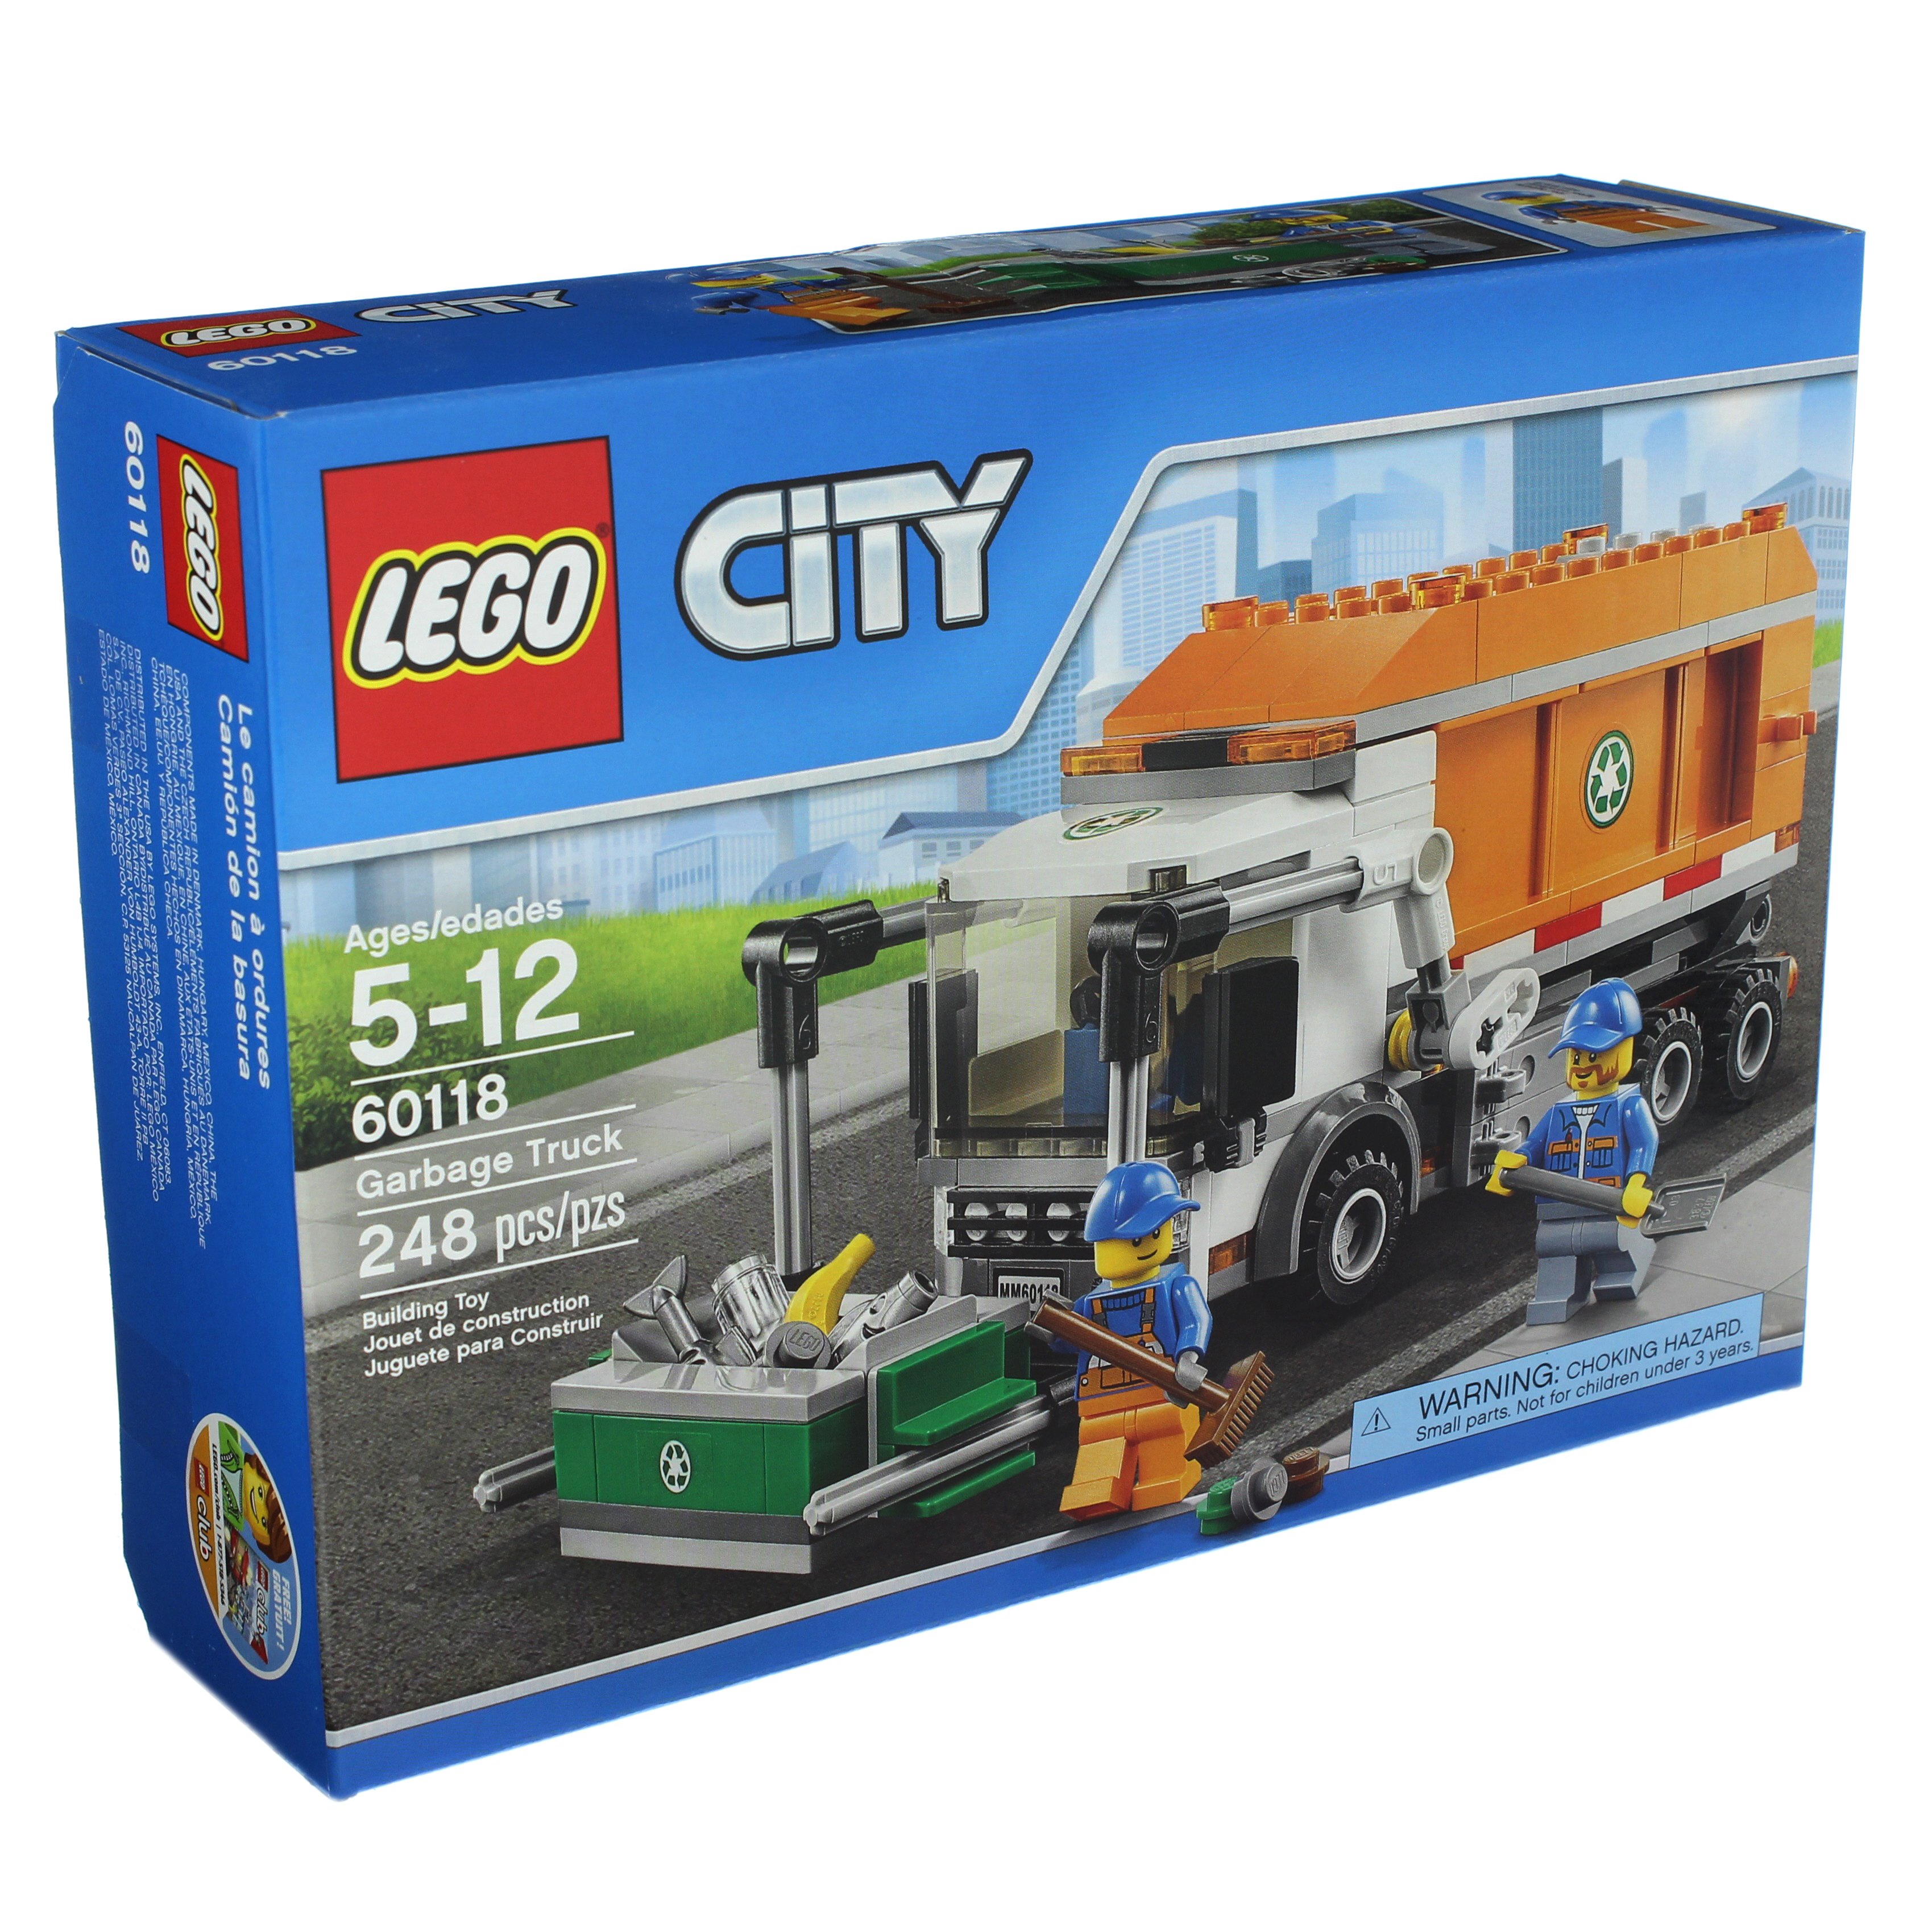 godkende brændstof niece LEGO City Great Vehicles Garbage Truck - Shop at H-E-B